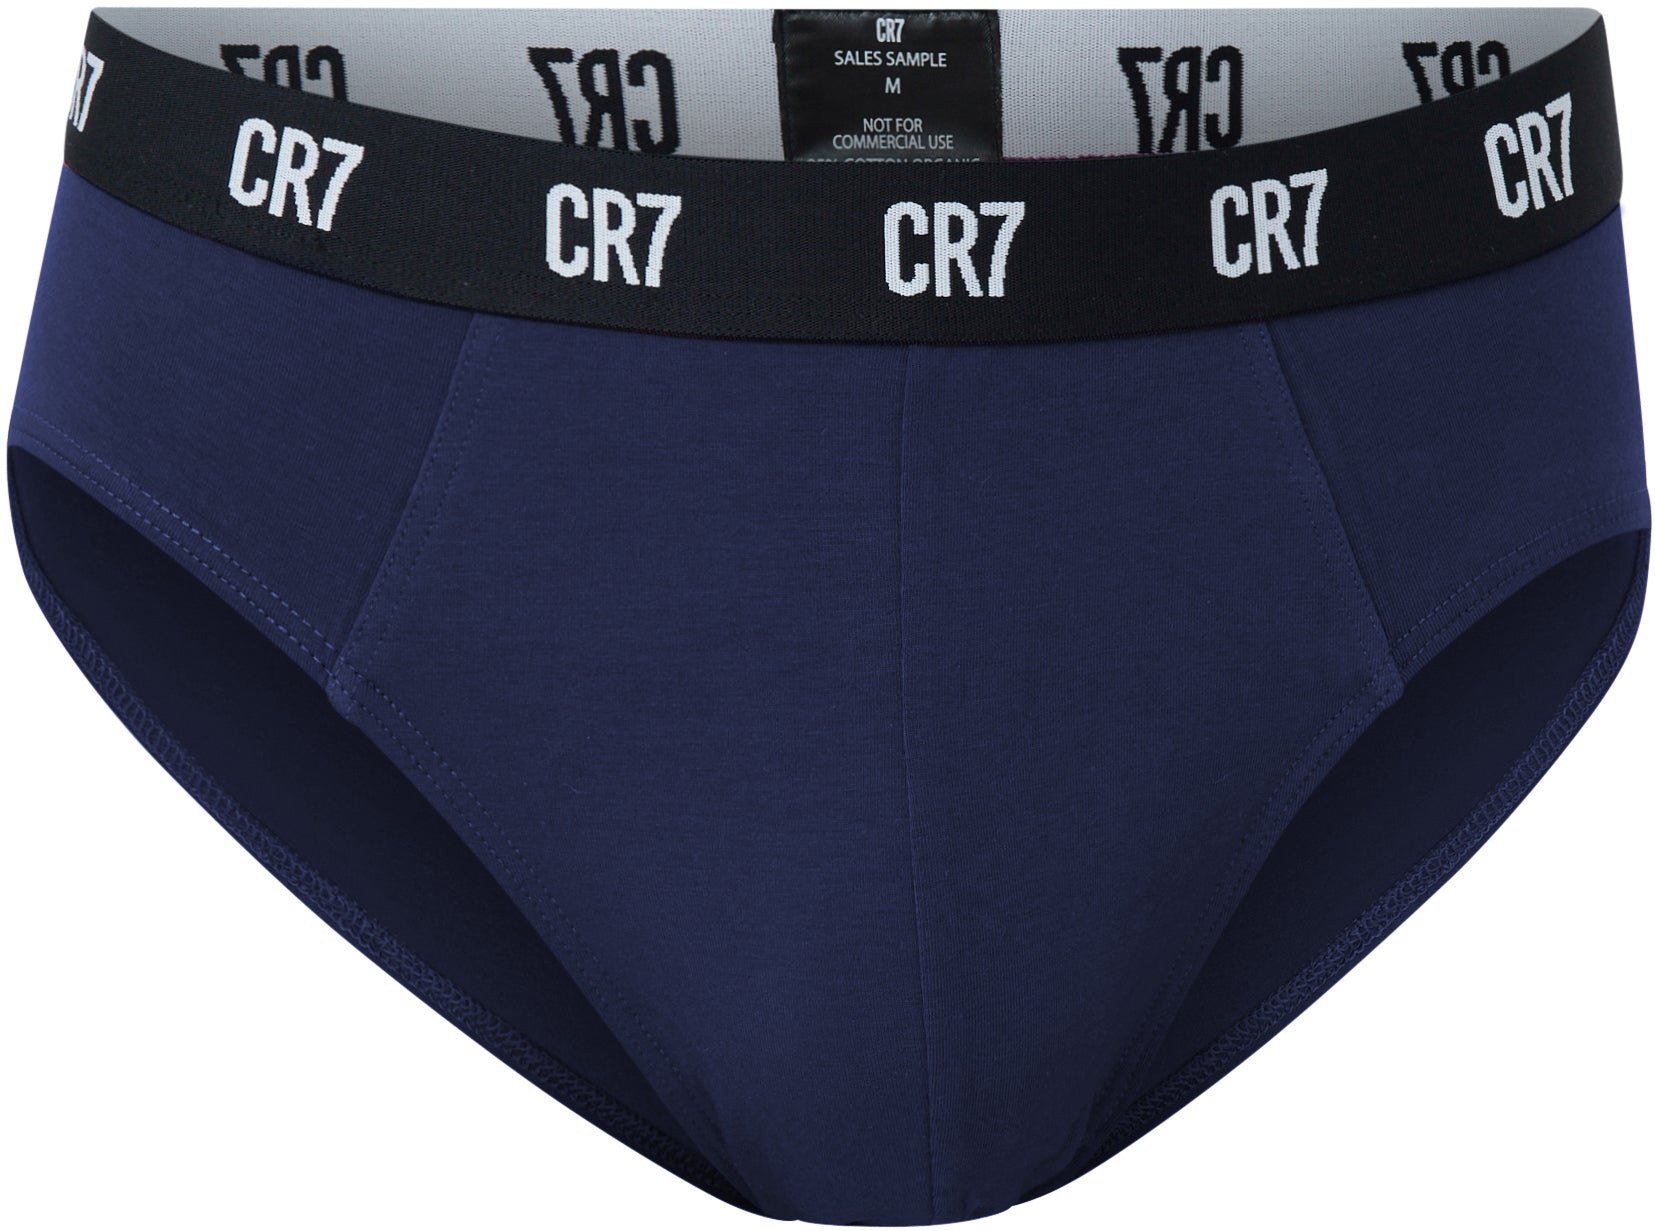 CR7 Underwear Singapore